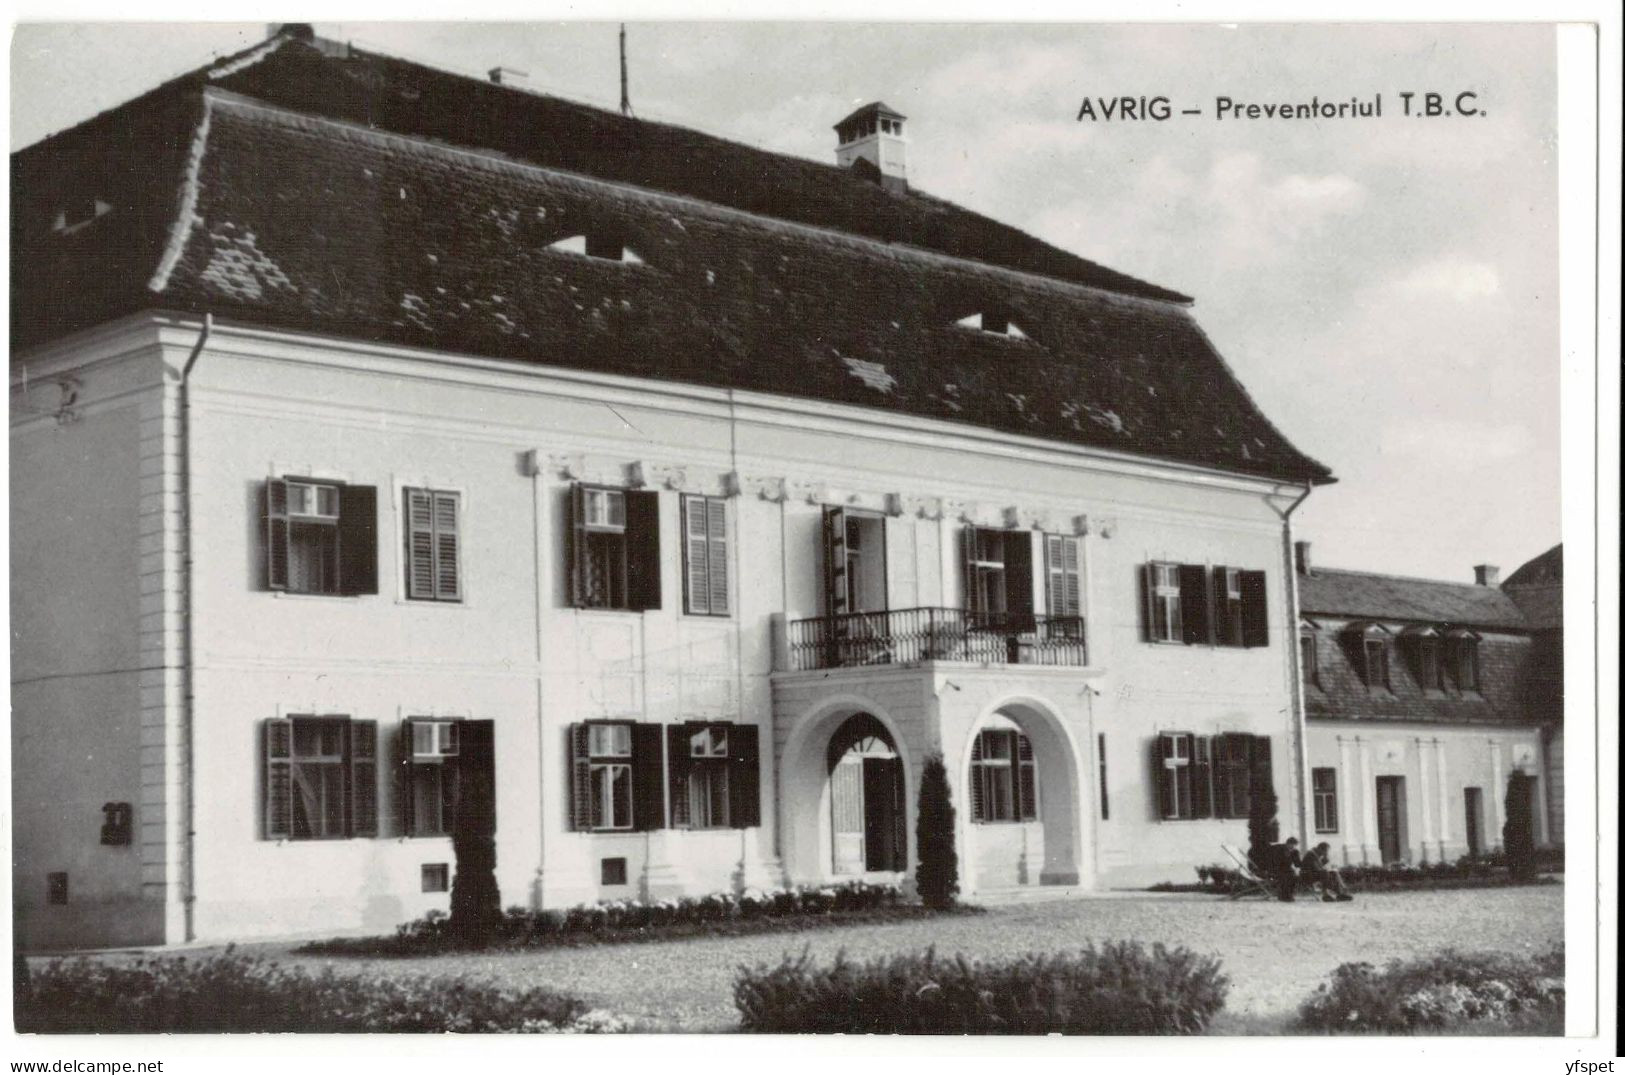 Avrig - TB Preventorium - Romania